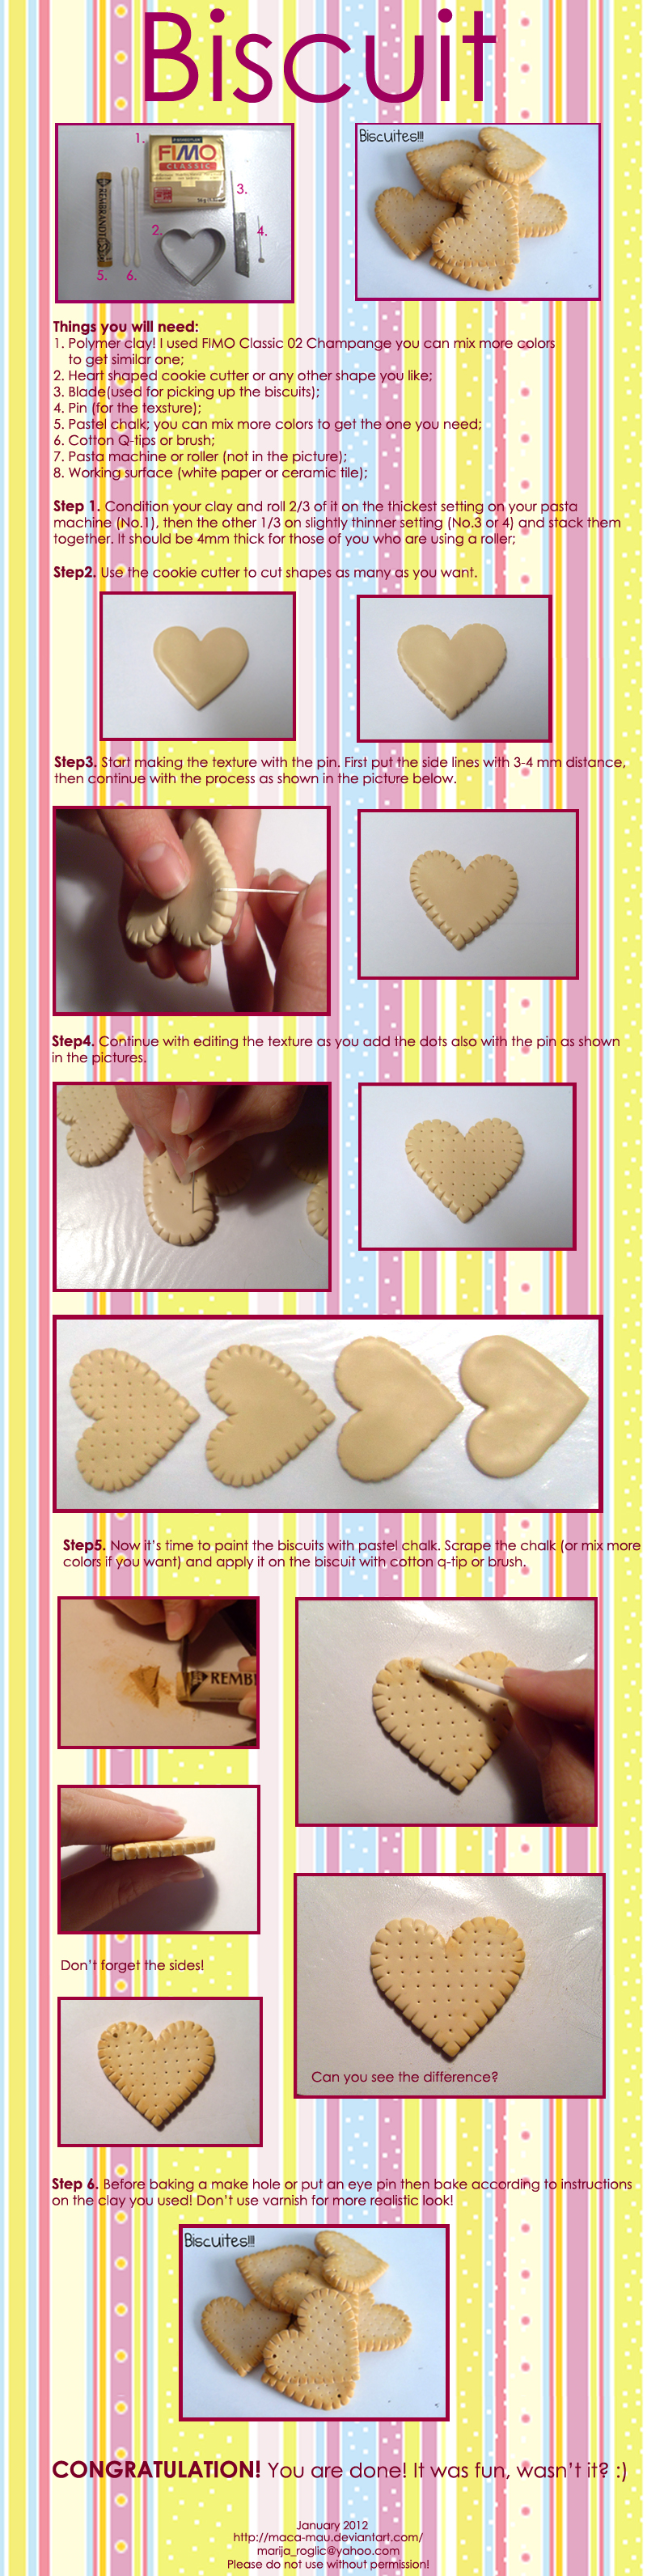 polymer_clay_biscuit_tutorial_by_maca_mau-d4o78pn.jpg